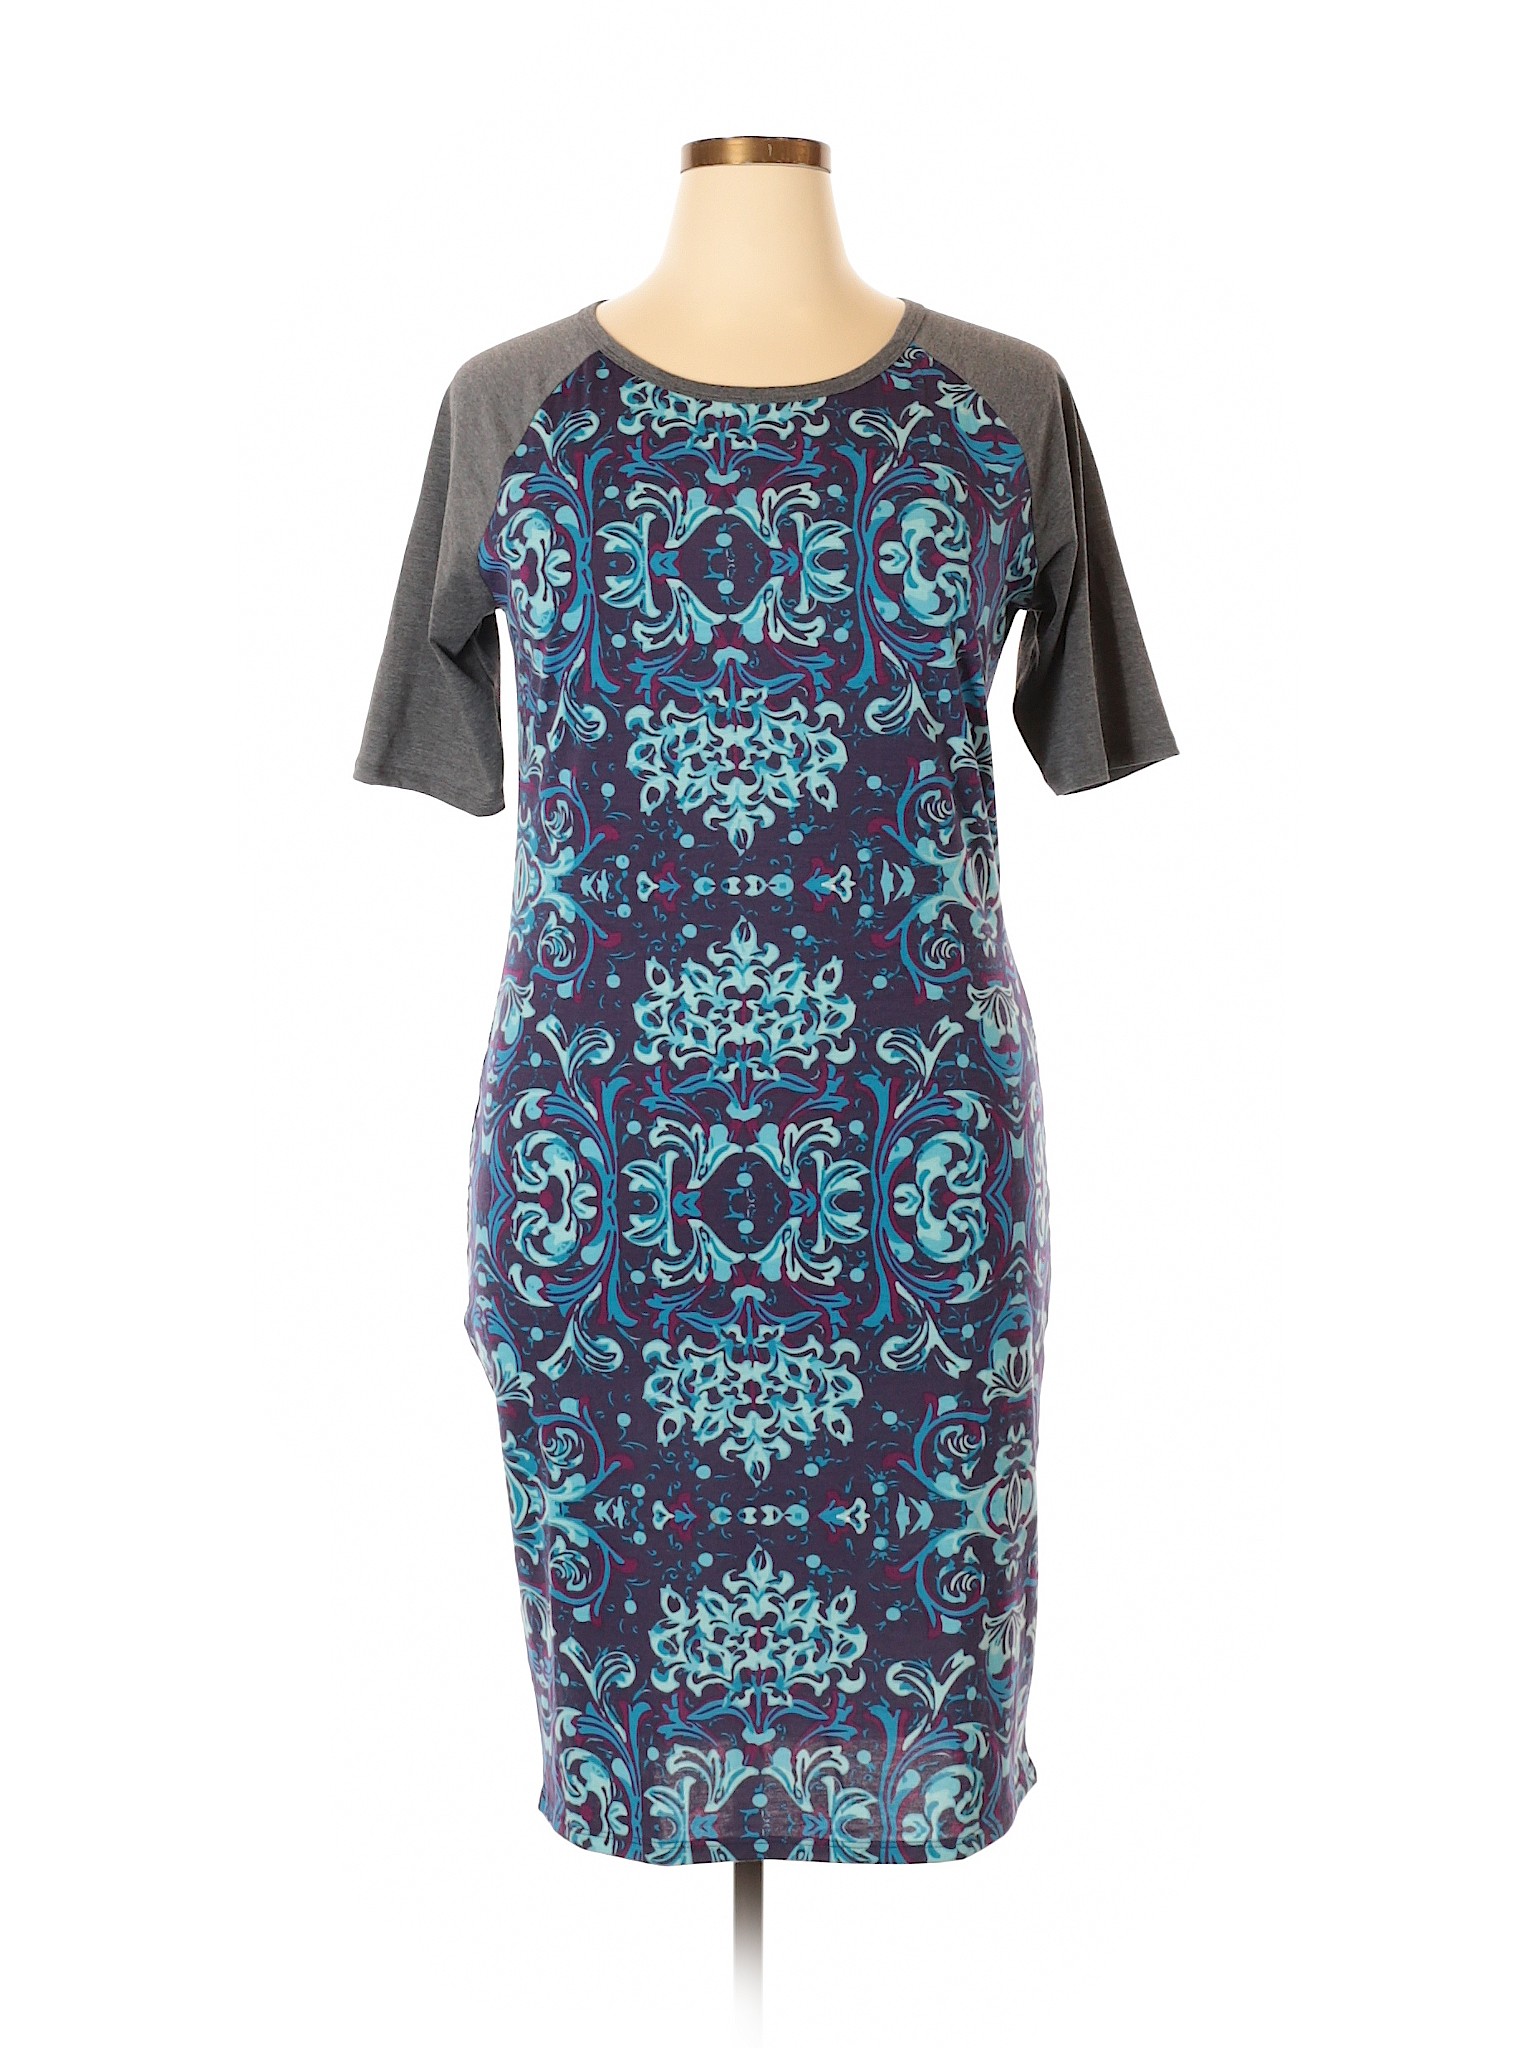 Lularoe Women Blue Casual Dress Xl | eBay